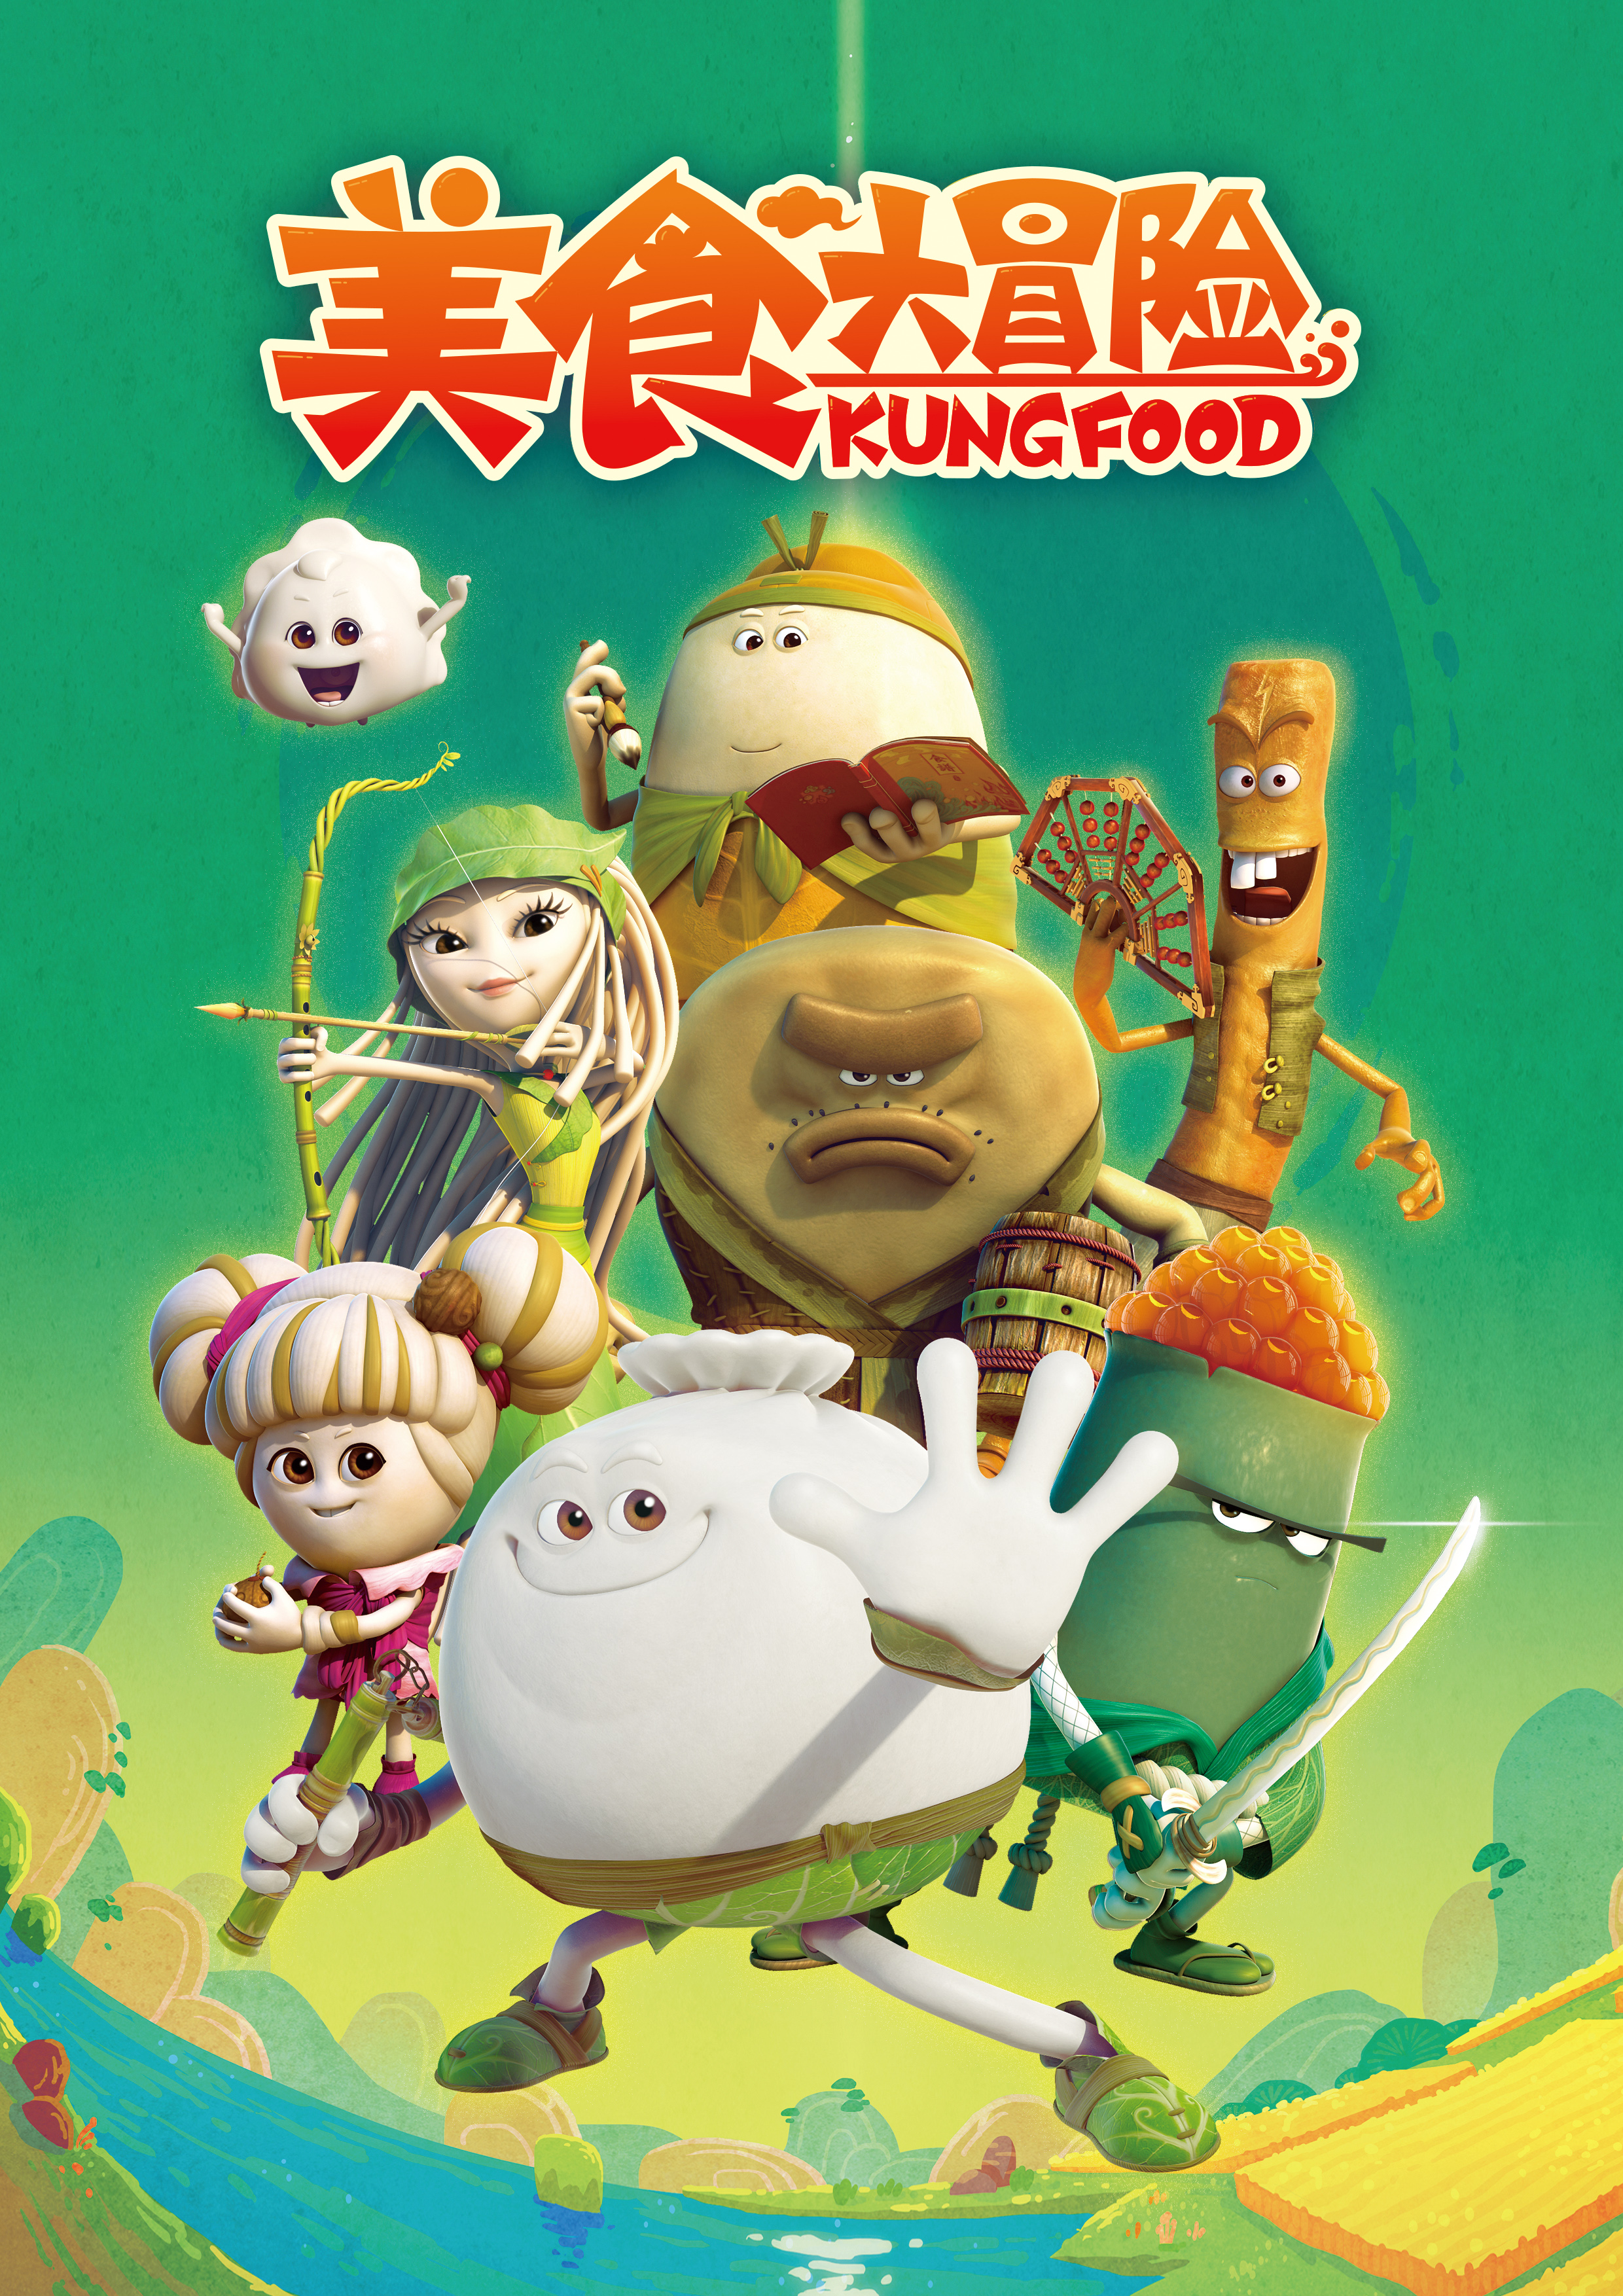 《美食大冒险2》上线亚马逊 成中国文化先锋